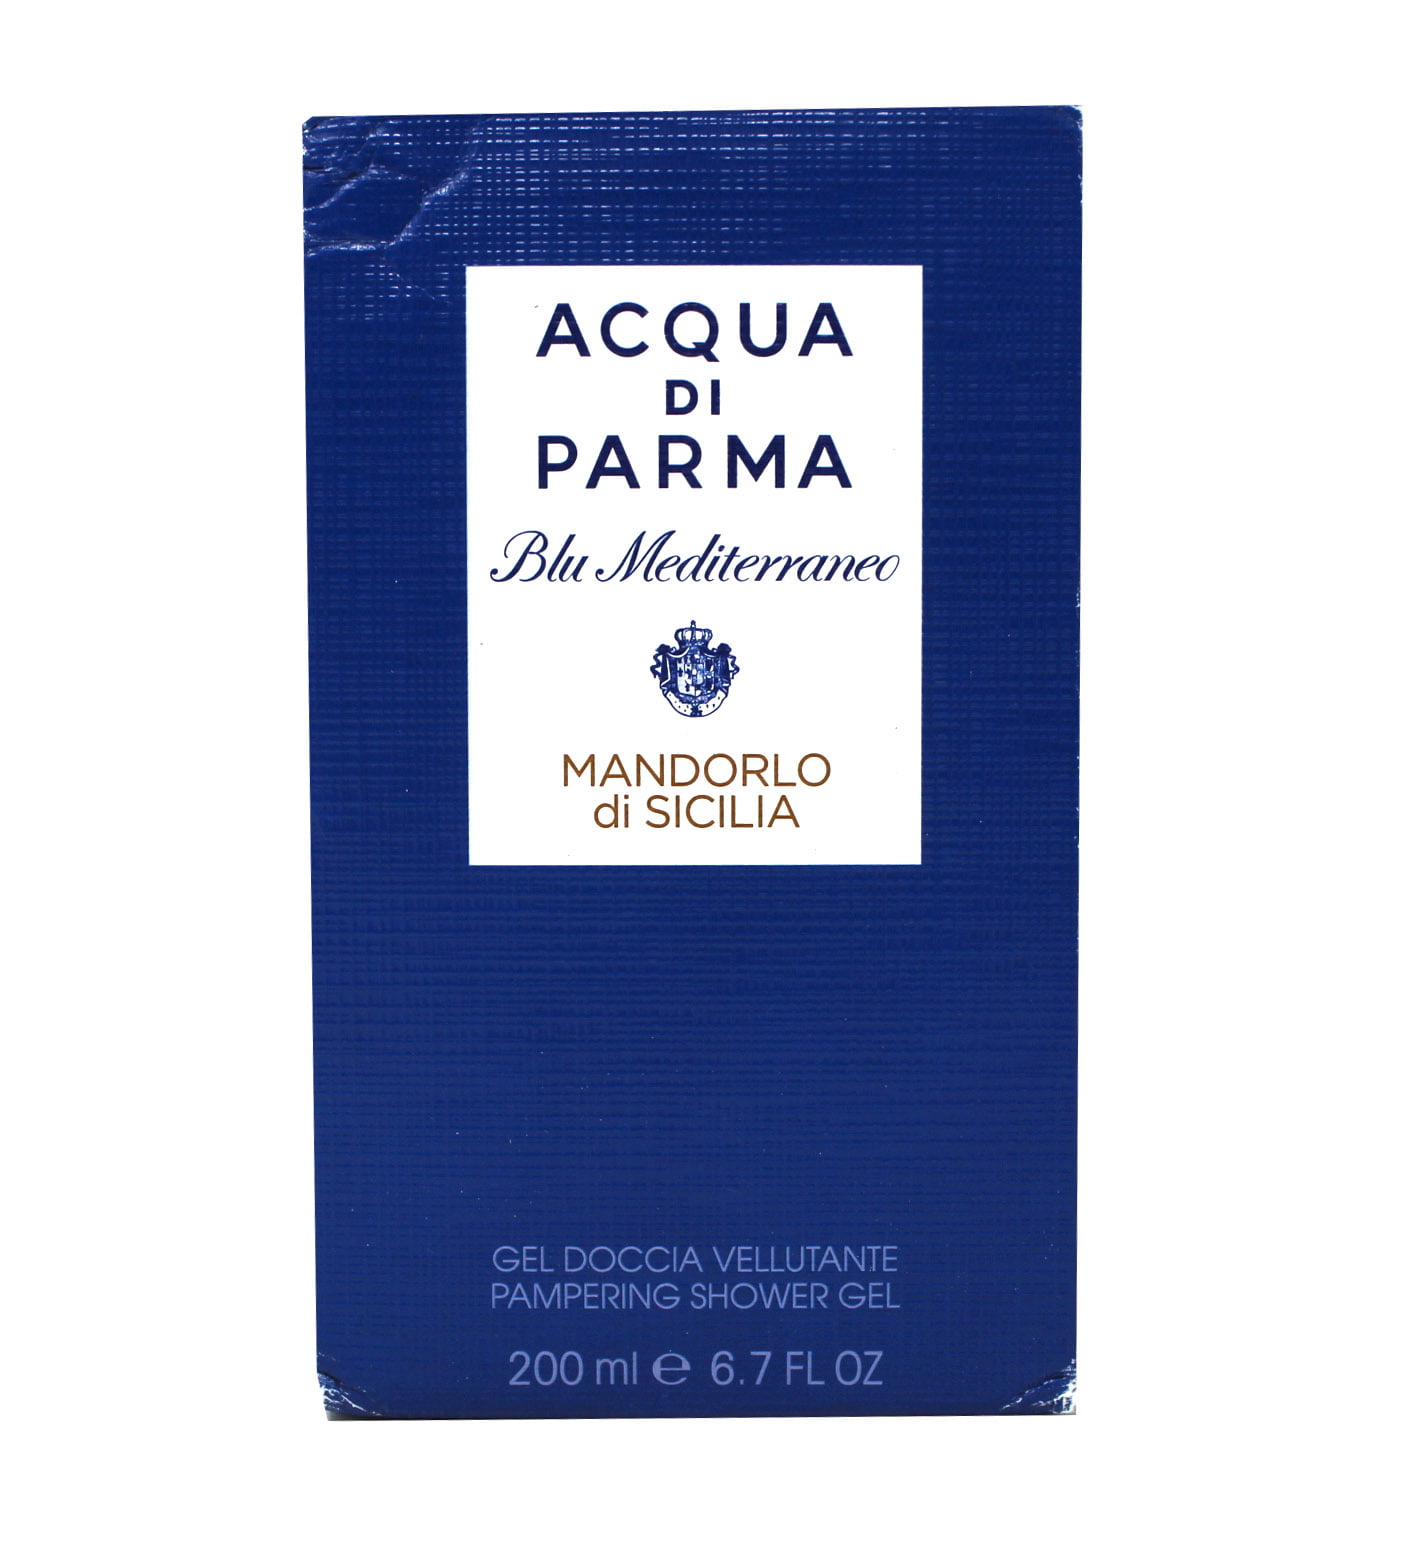 Acqua di Parma blu mediterraneo mandorlo di sicilia pampering body lotion -  Reviews